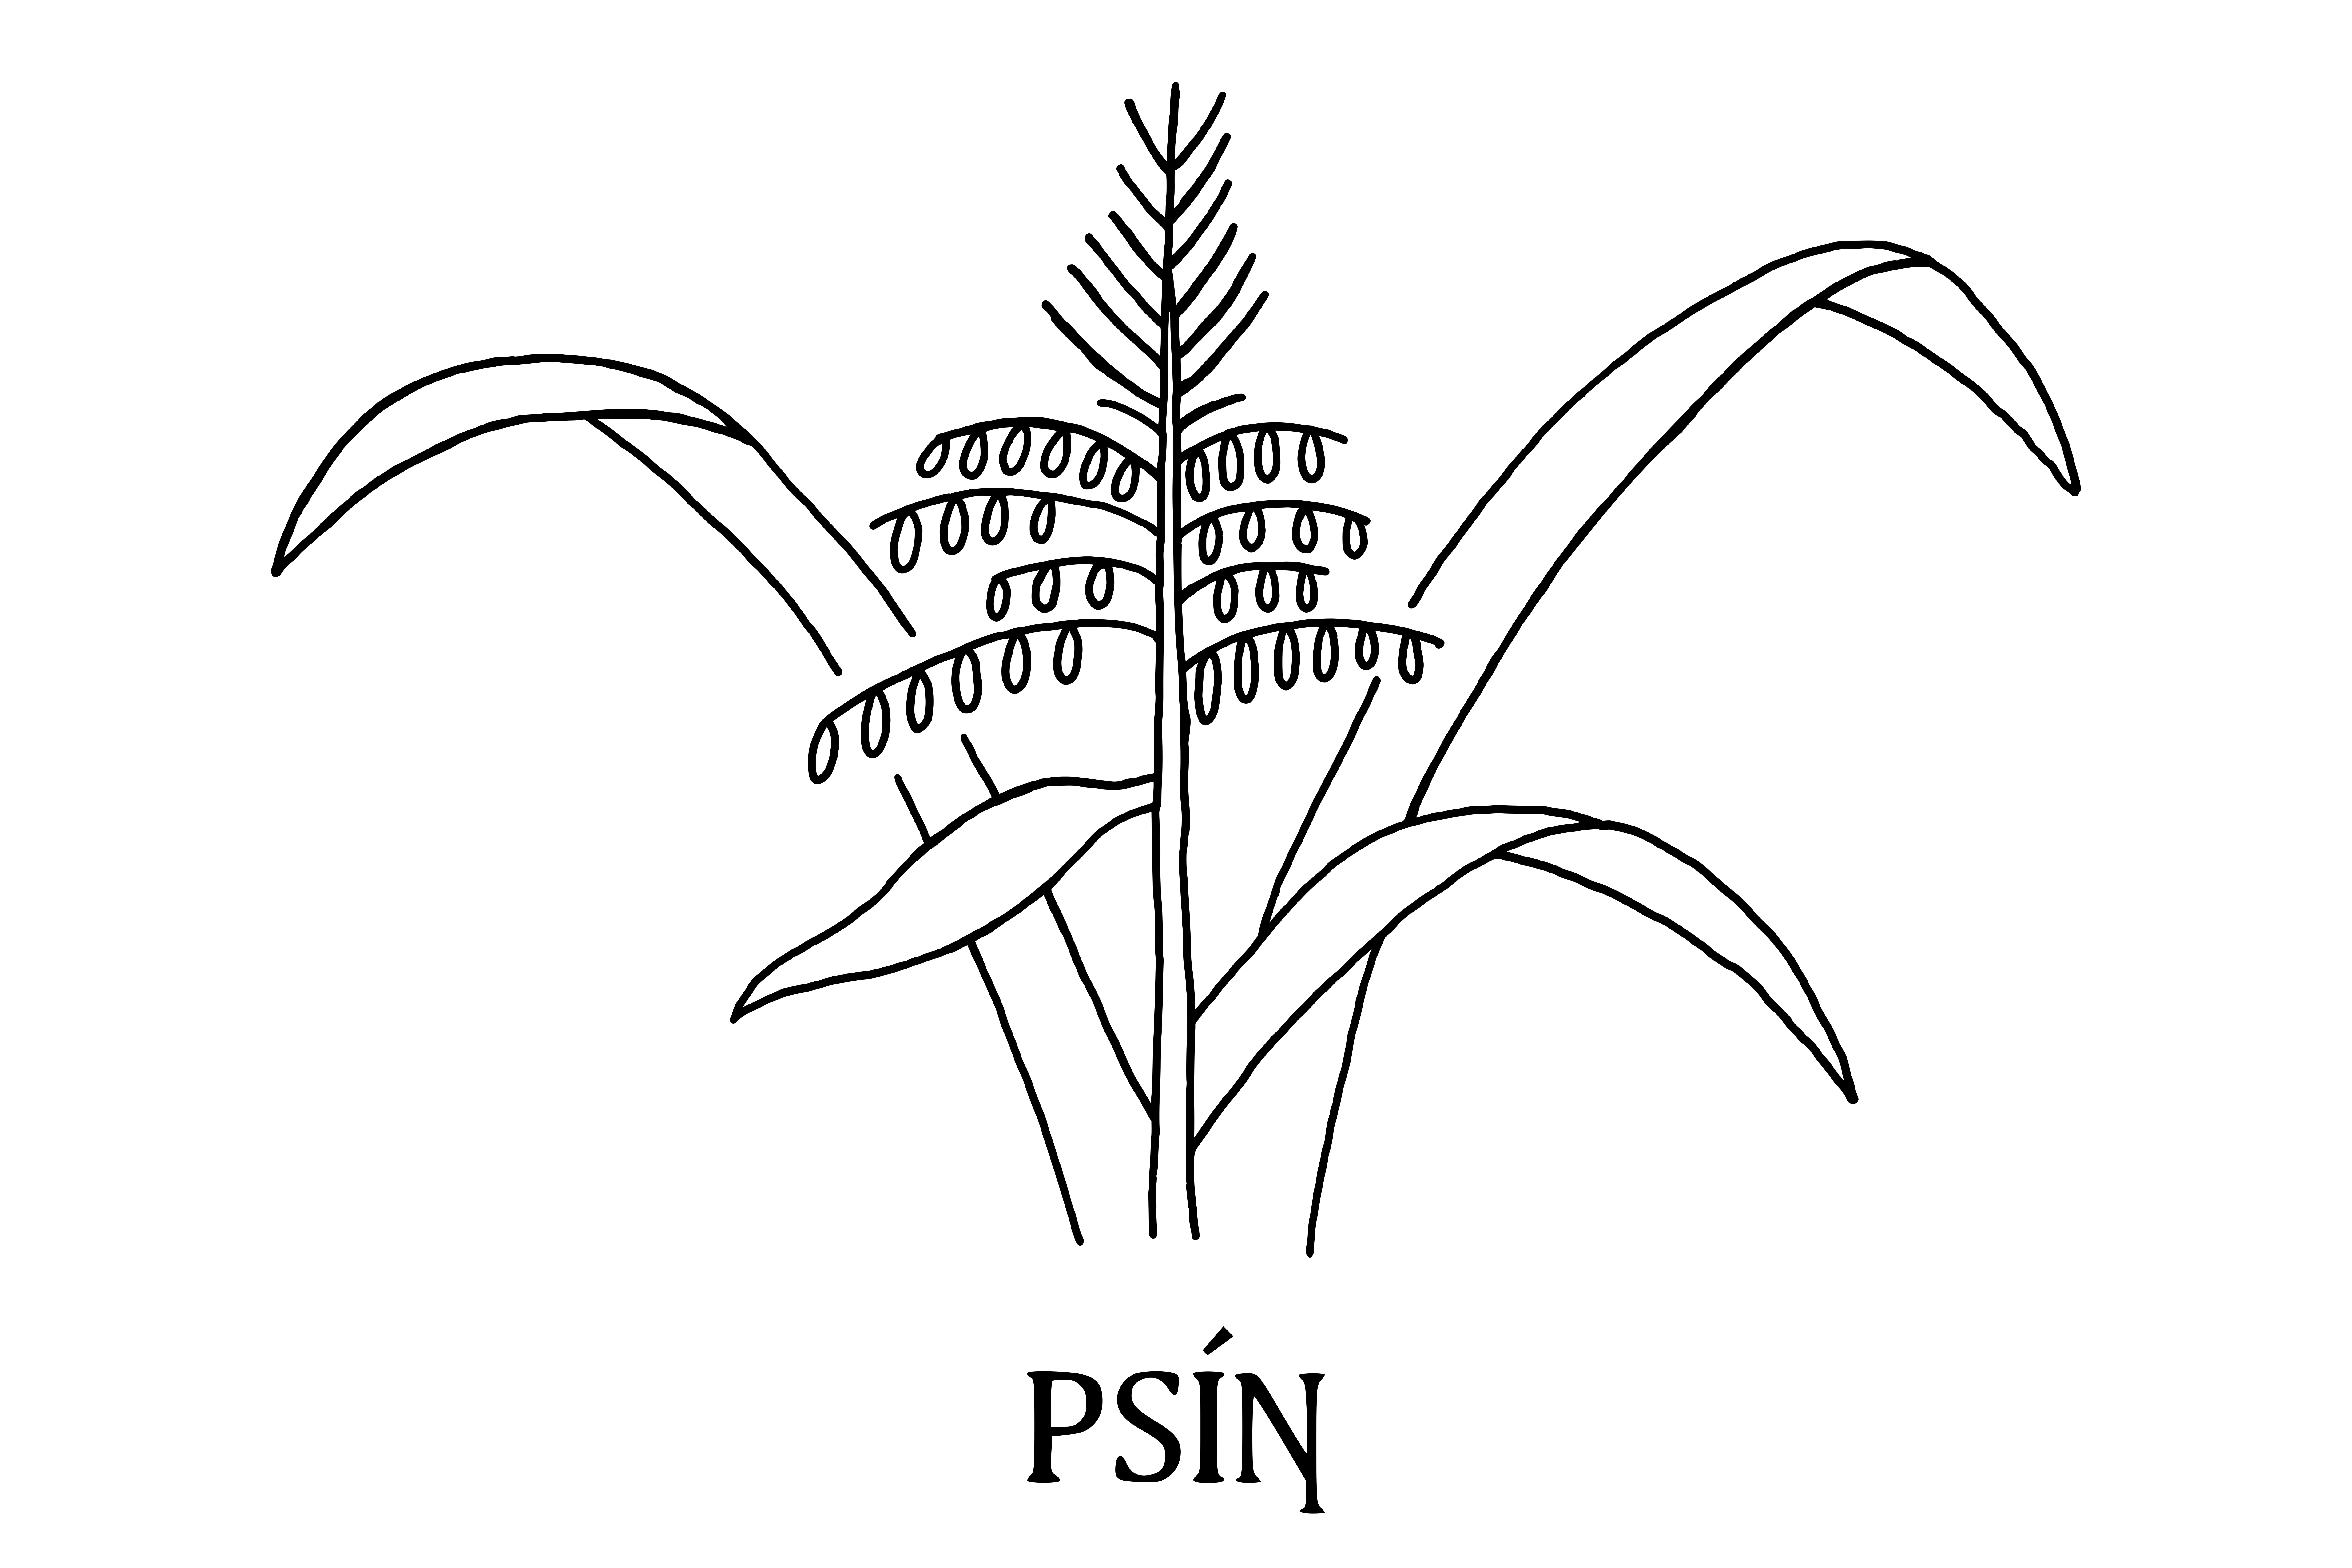 Psin-Wild Rice Sidewalk Stamp